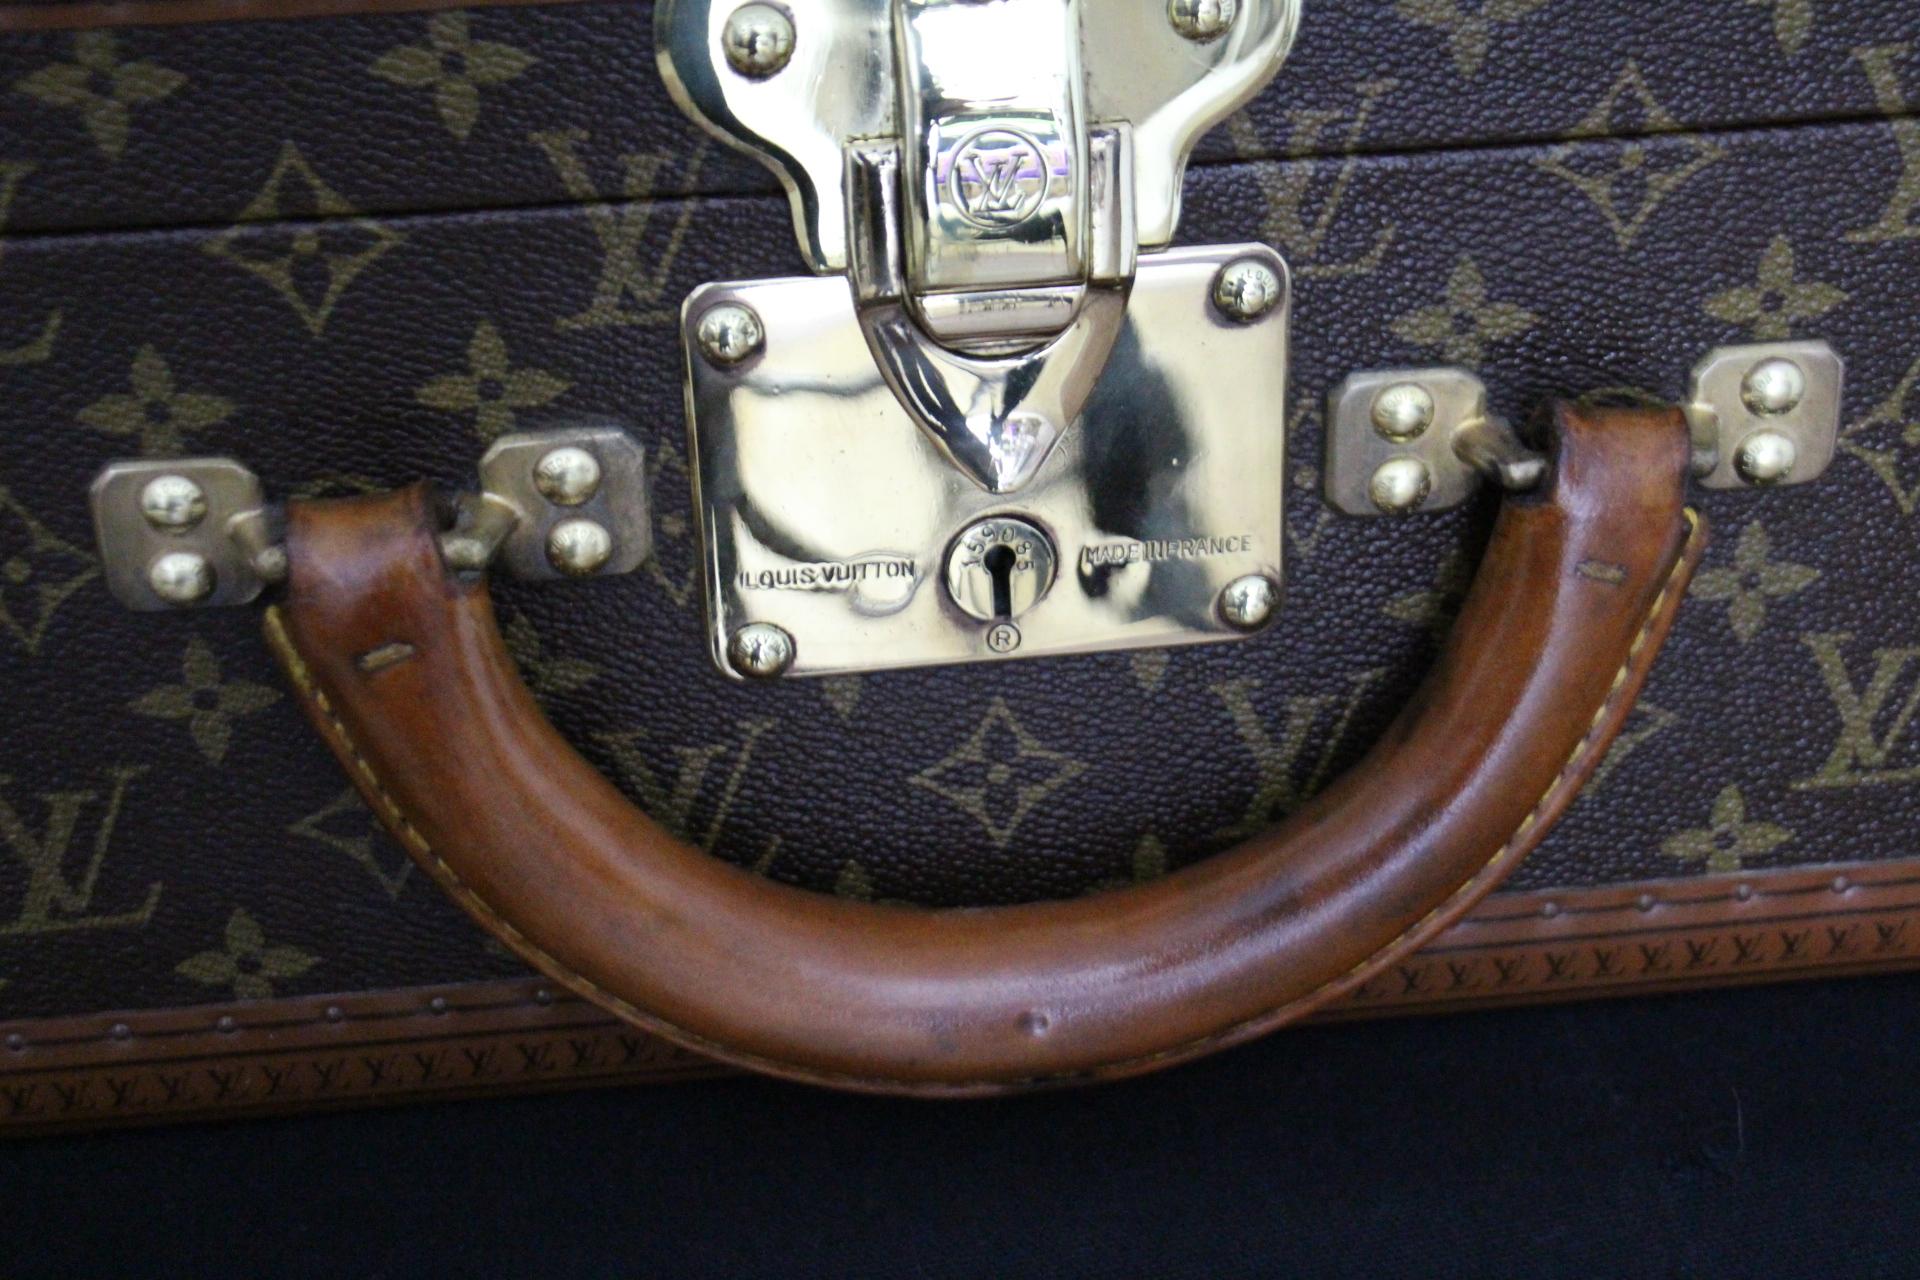  Louis Vuitton Suitcase 80 cm,  80 cm Louis Vuitton Trunk In Good Condition For Sale In Saint-ouen, FR